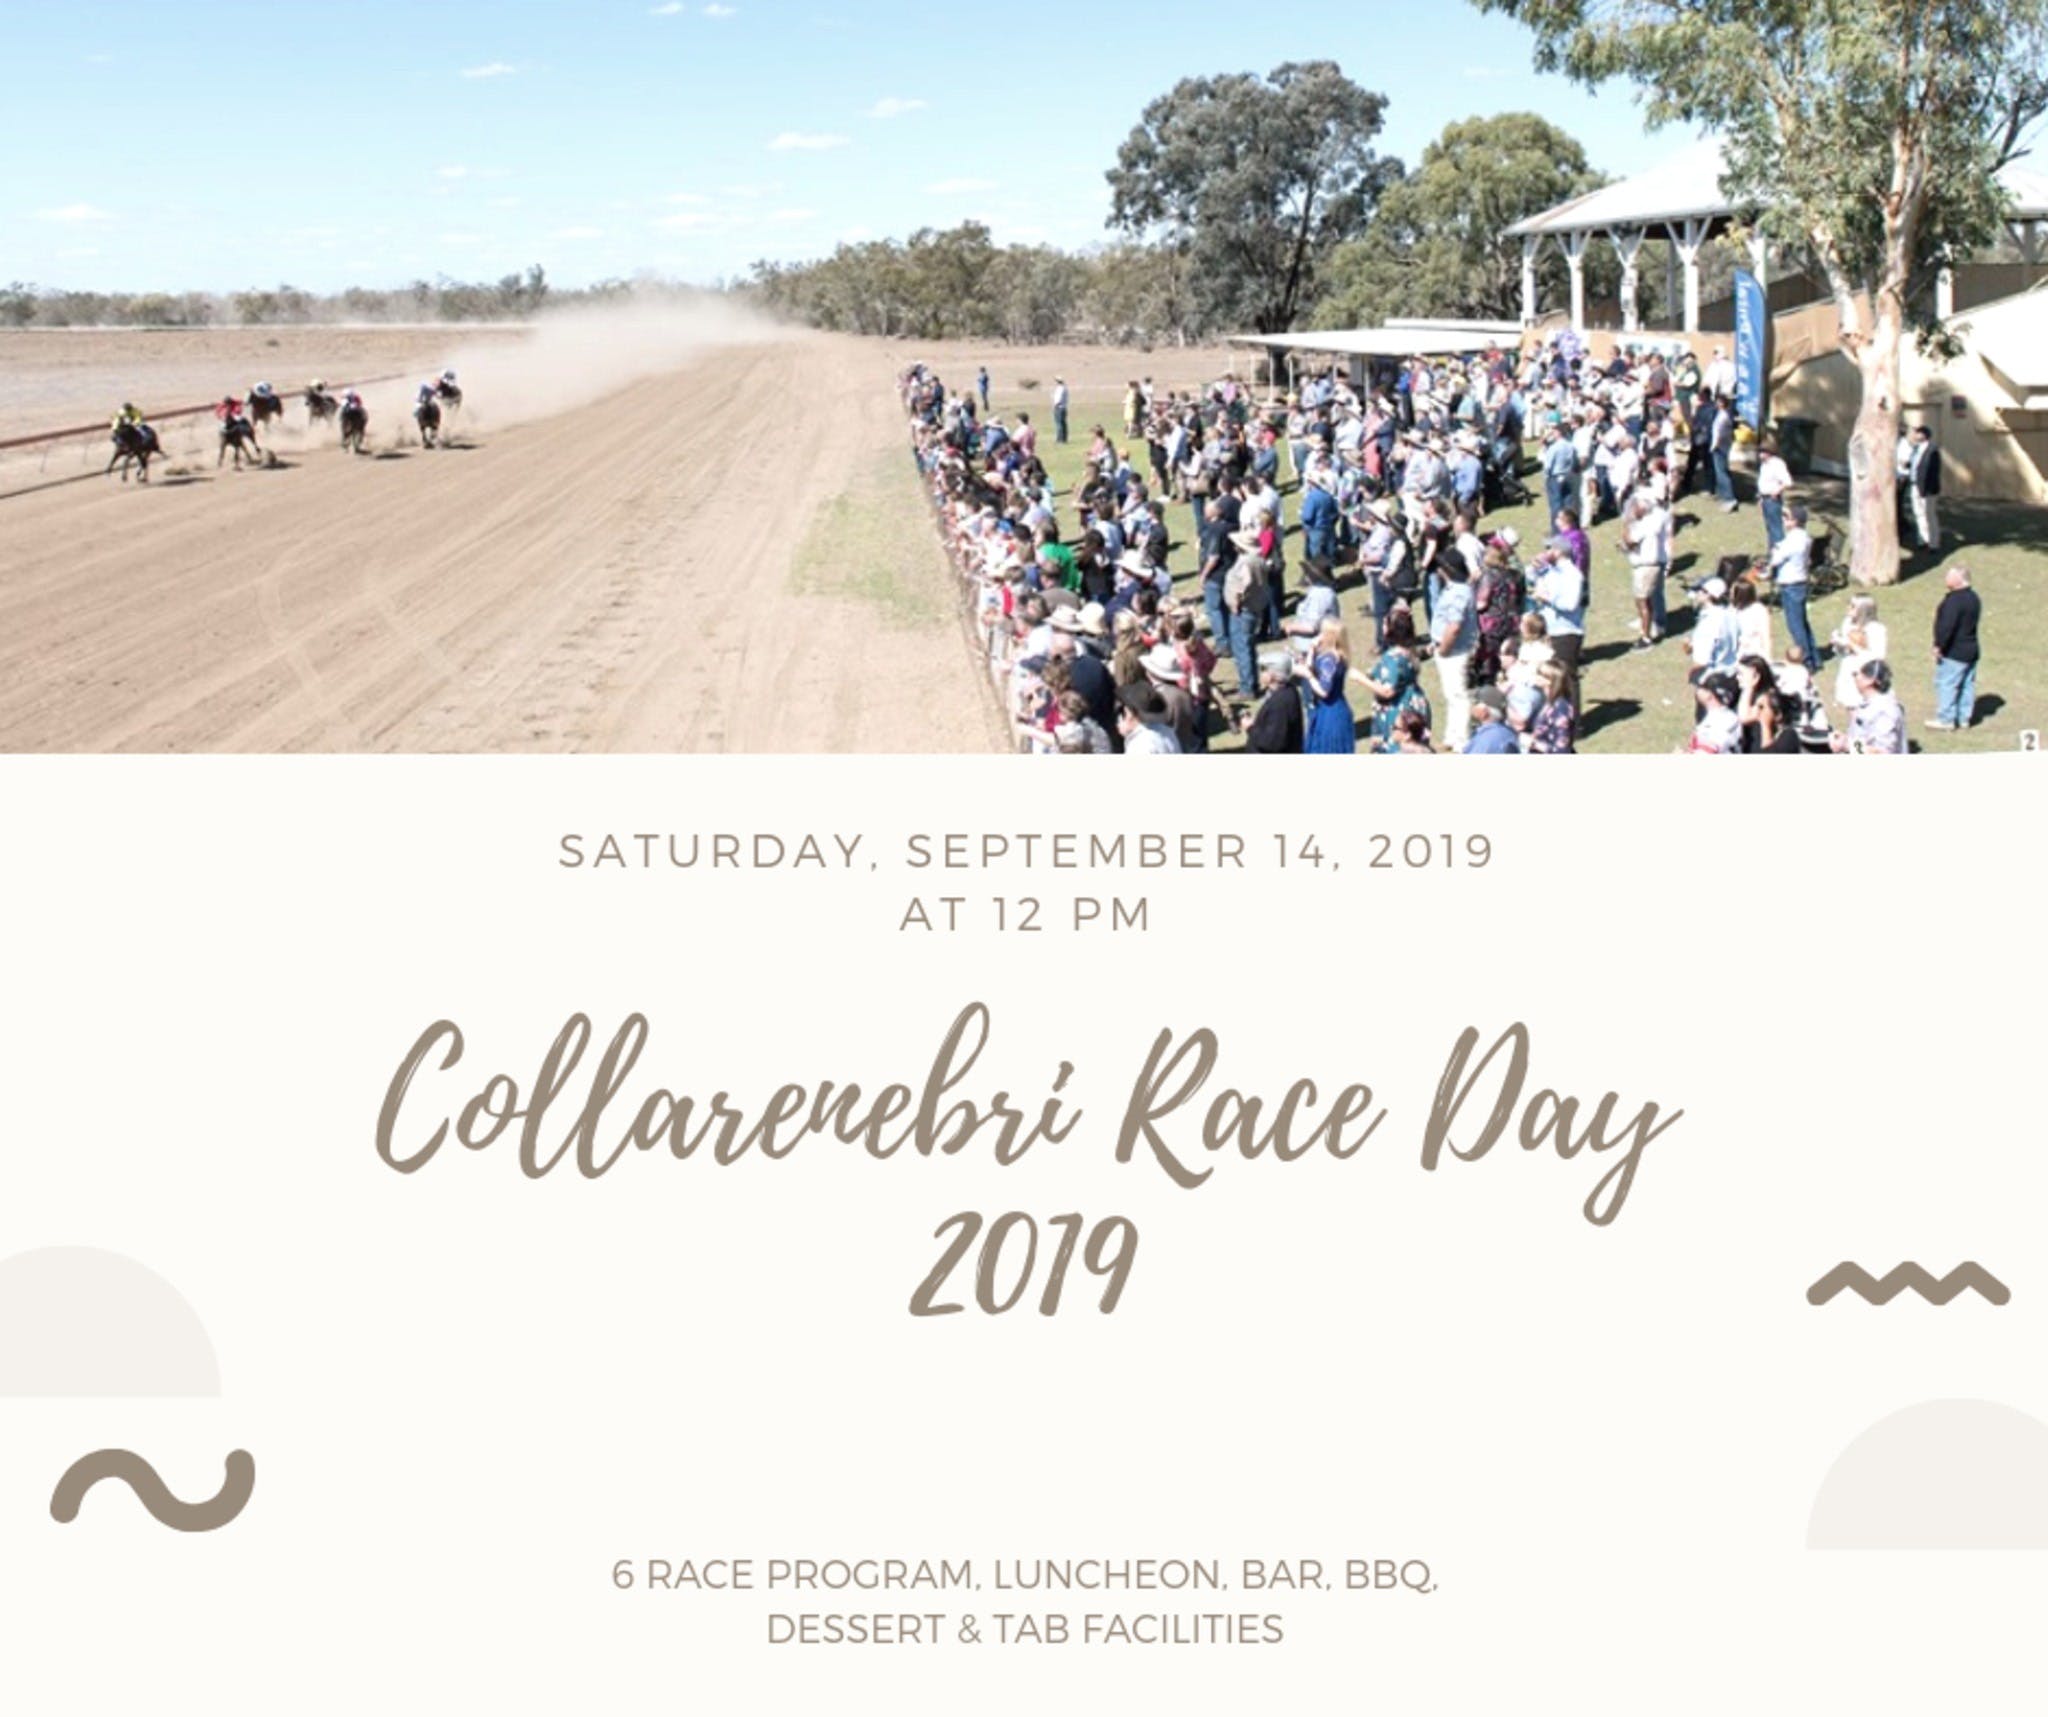 Collarenebri Races - Melbourne Tourism